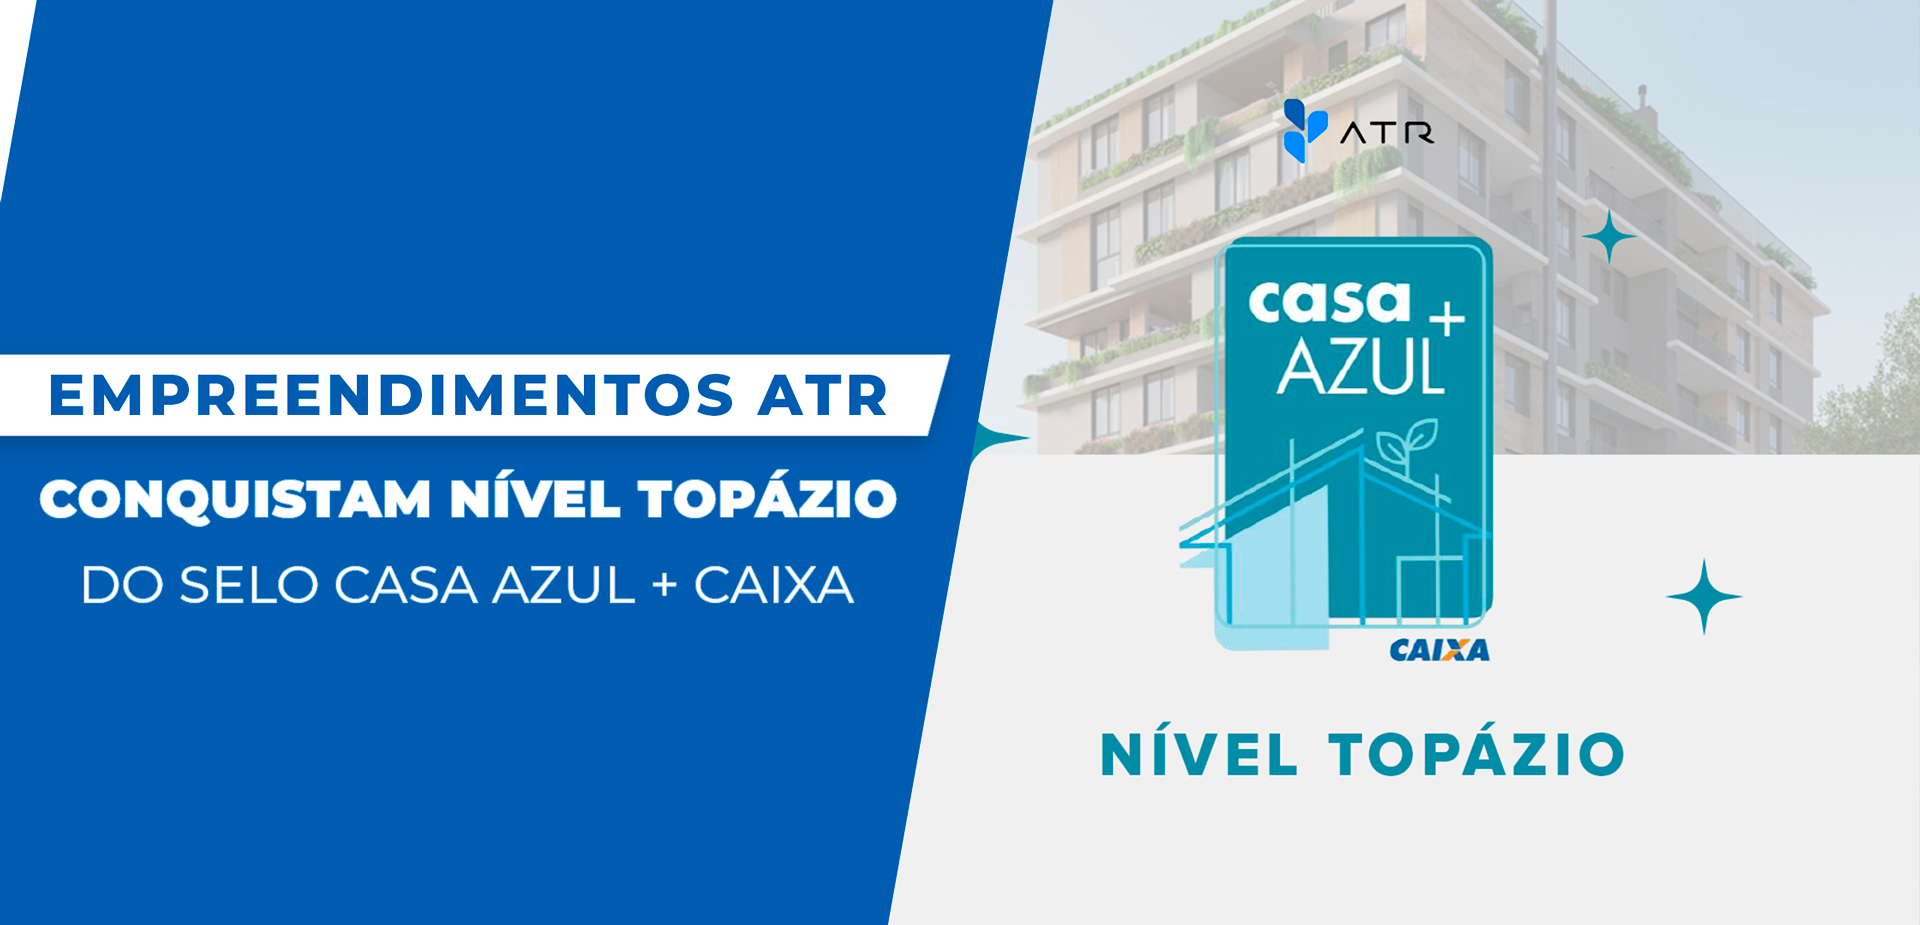 Selo Casa Azul da Caixa: Empreendimentos da ATR conquistam Nível Topázio